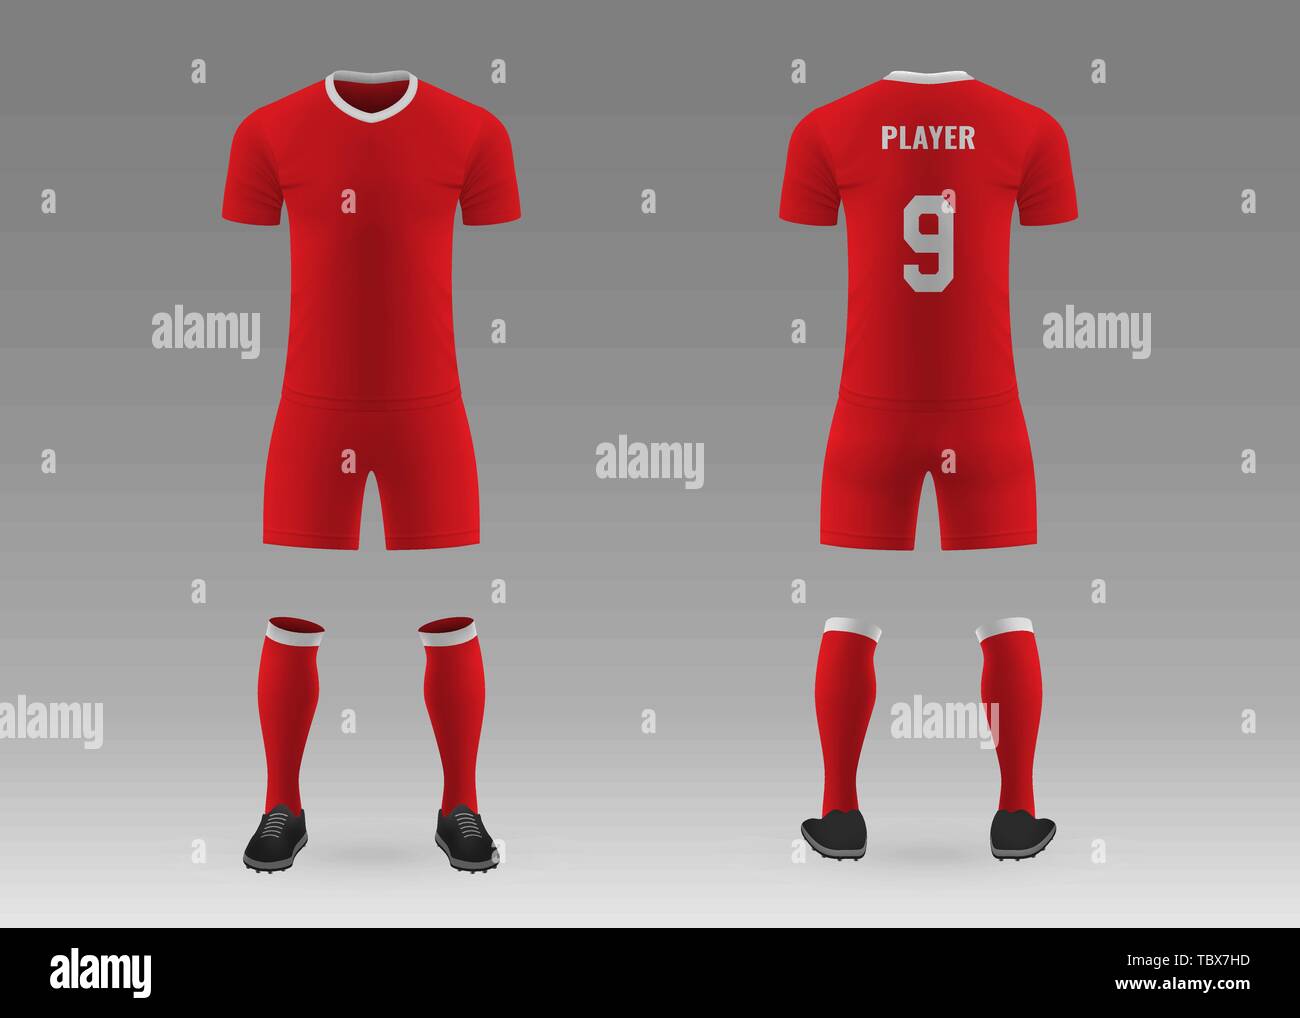 soccer jersey template psd